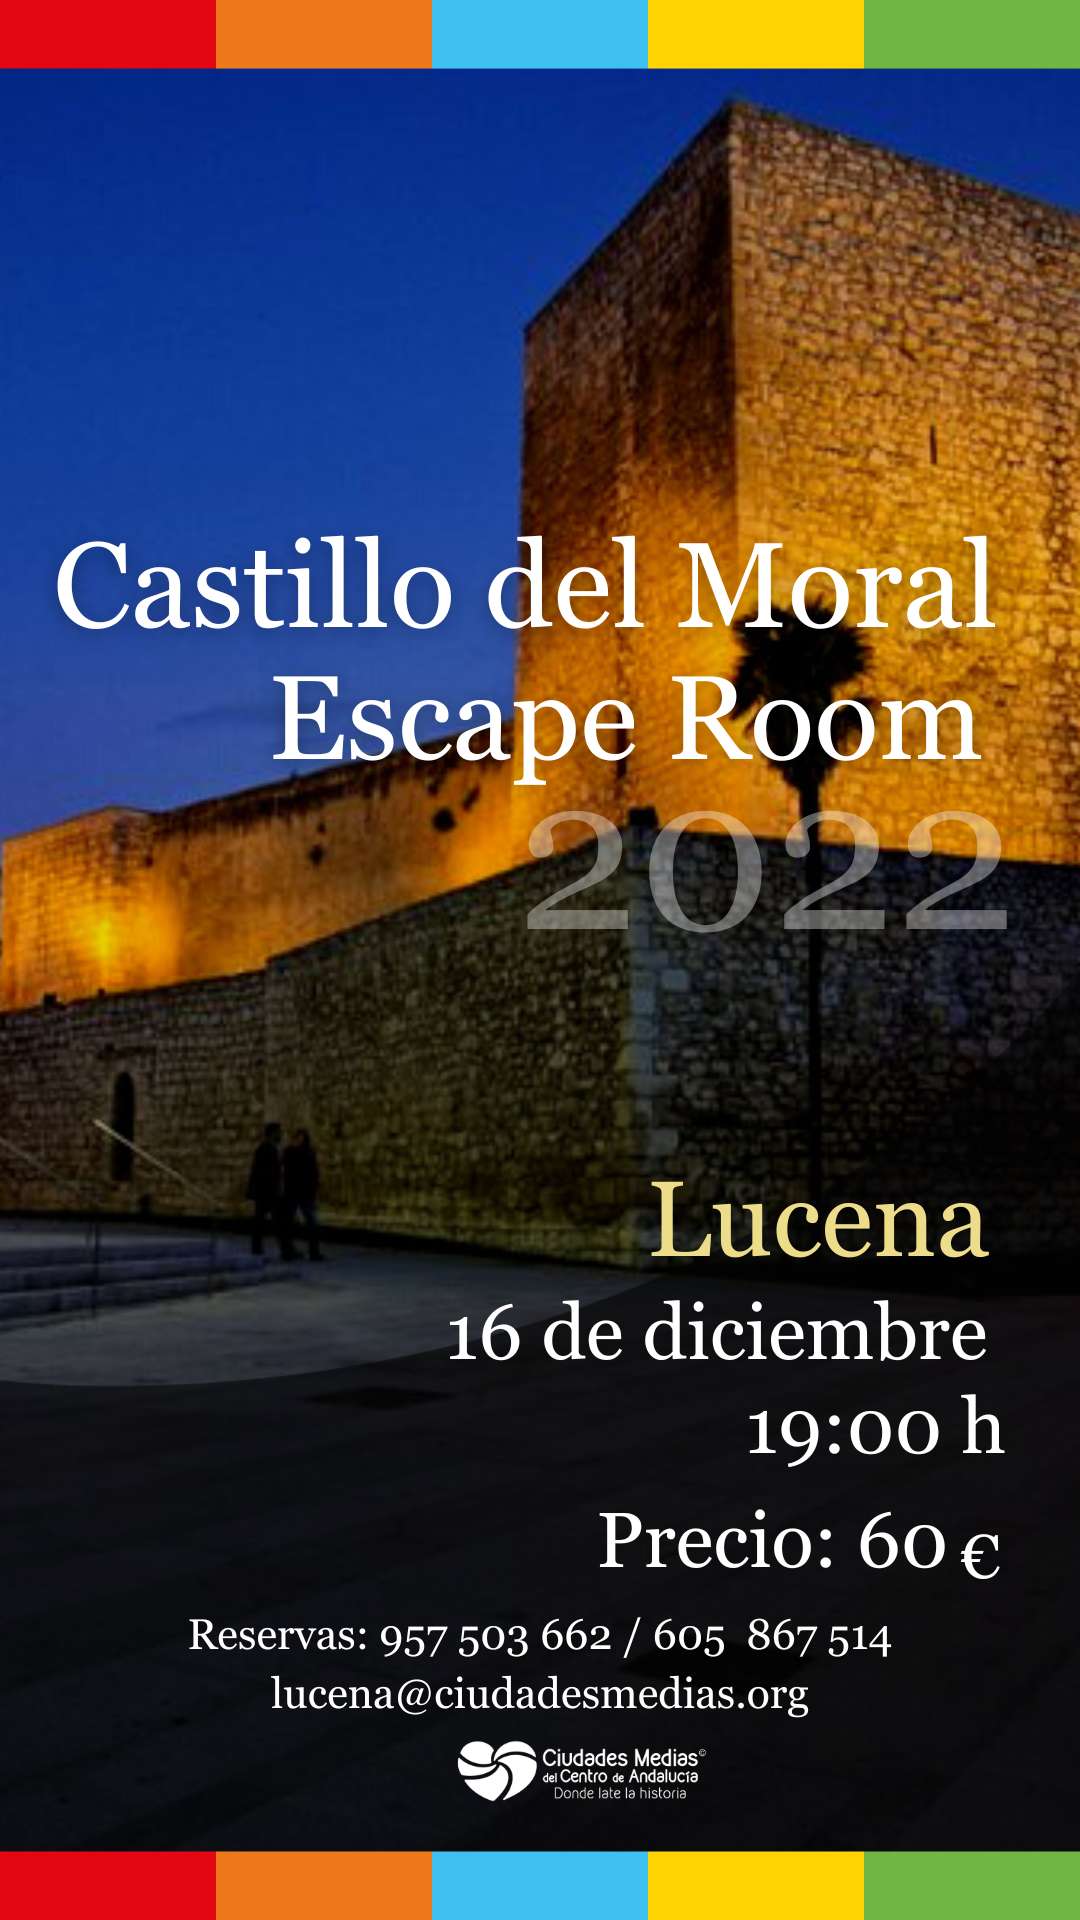 Scape room "Castillo del Moral